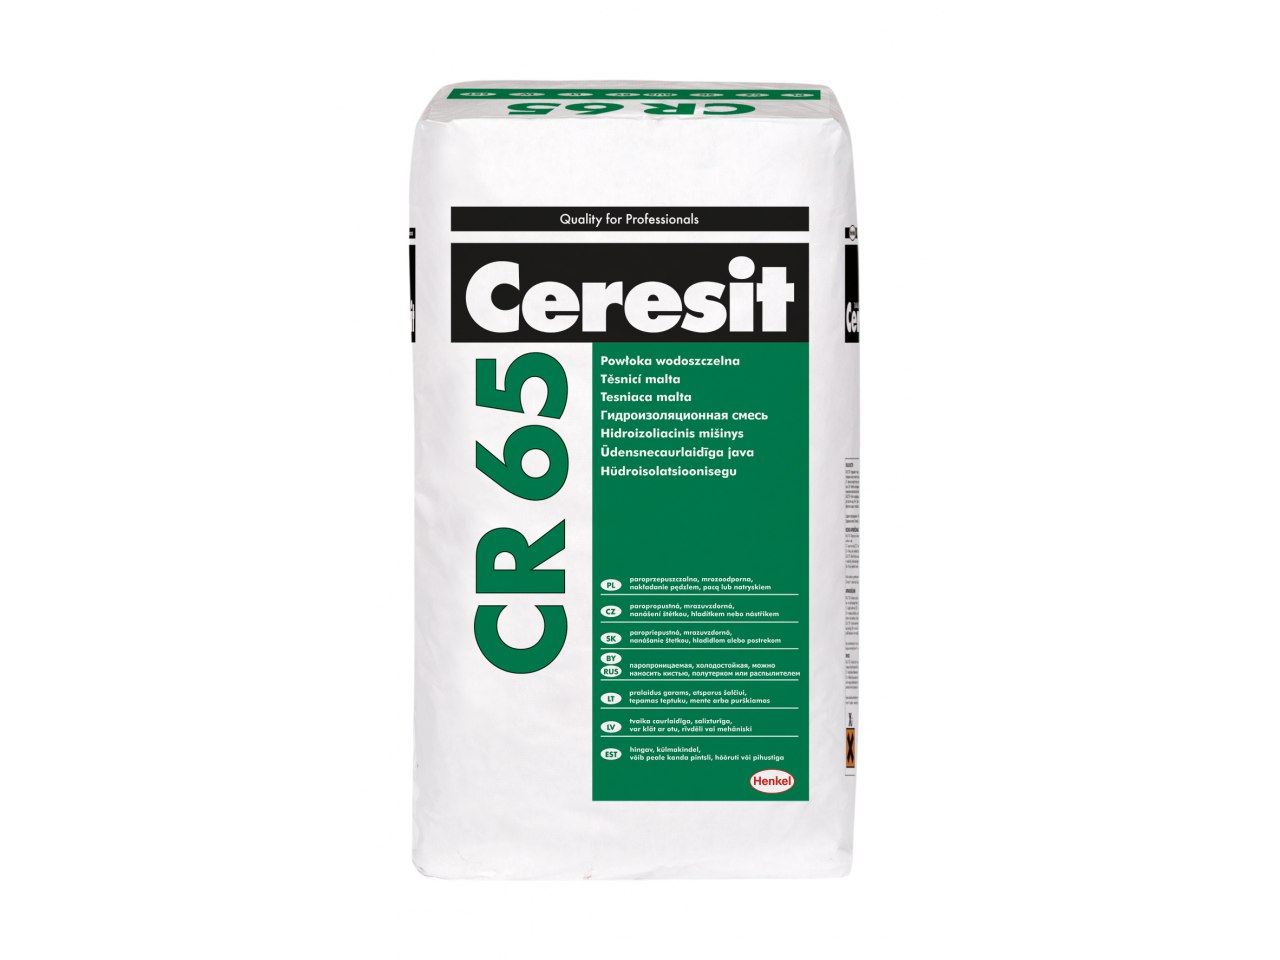 Lze místo injektáže Ceresit CE33 použít hydroizolaci Ceresit CR65?